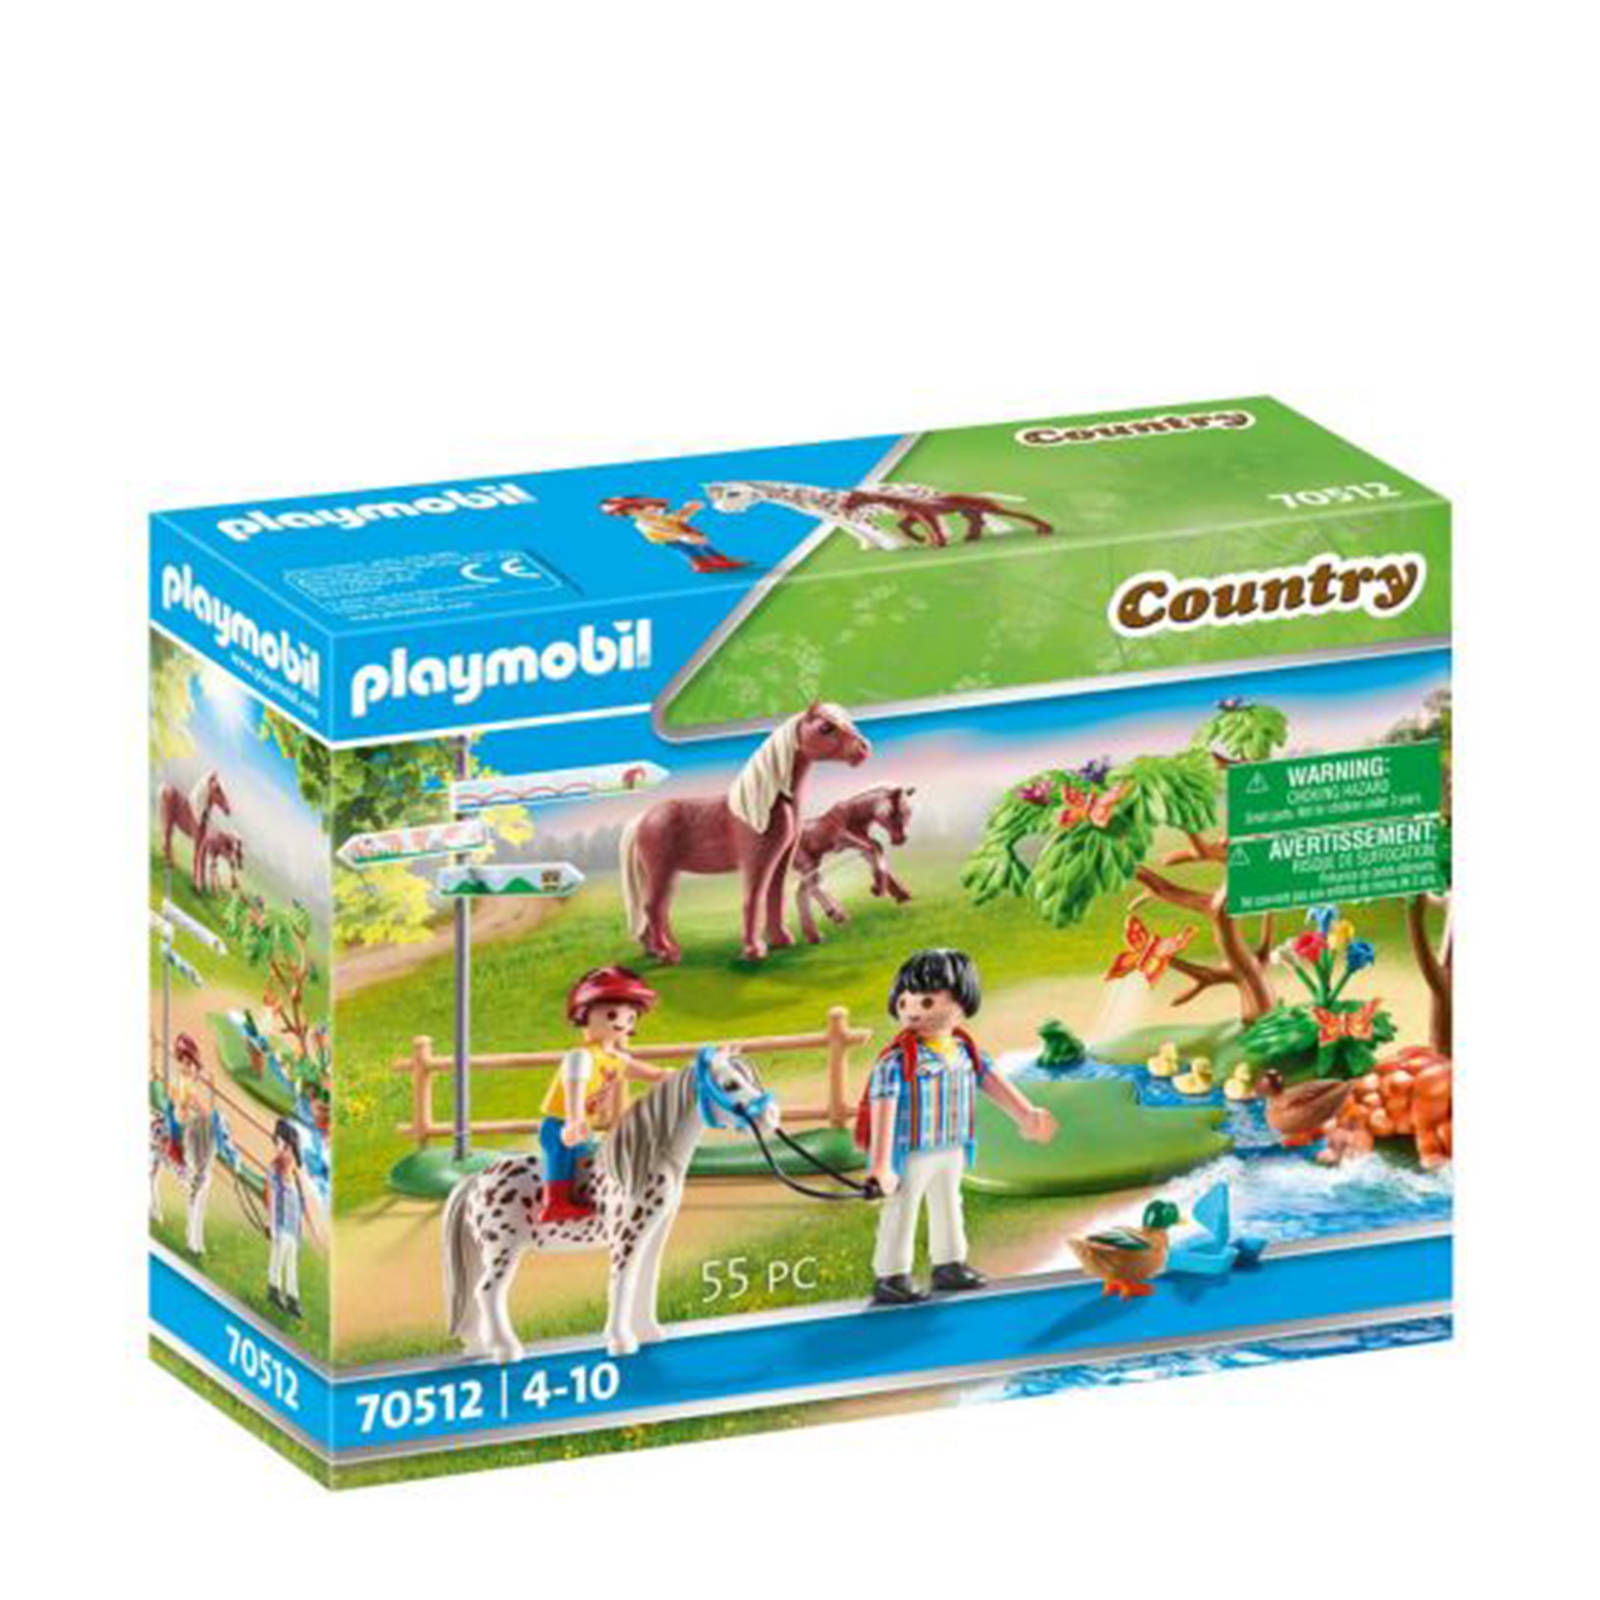 Playmobil ® Constructie speelset Gelukkige ponyreis(70512 ), Country Made in Germany(55 stuks ) online kopen